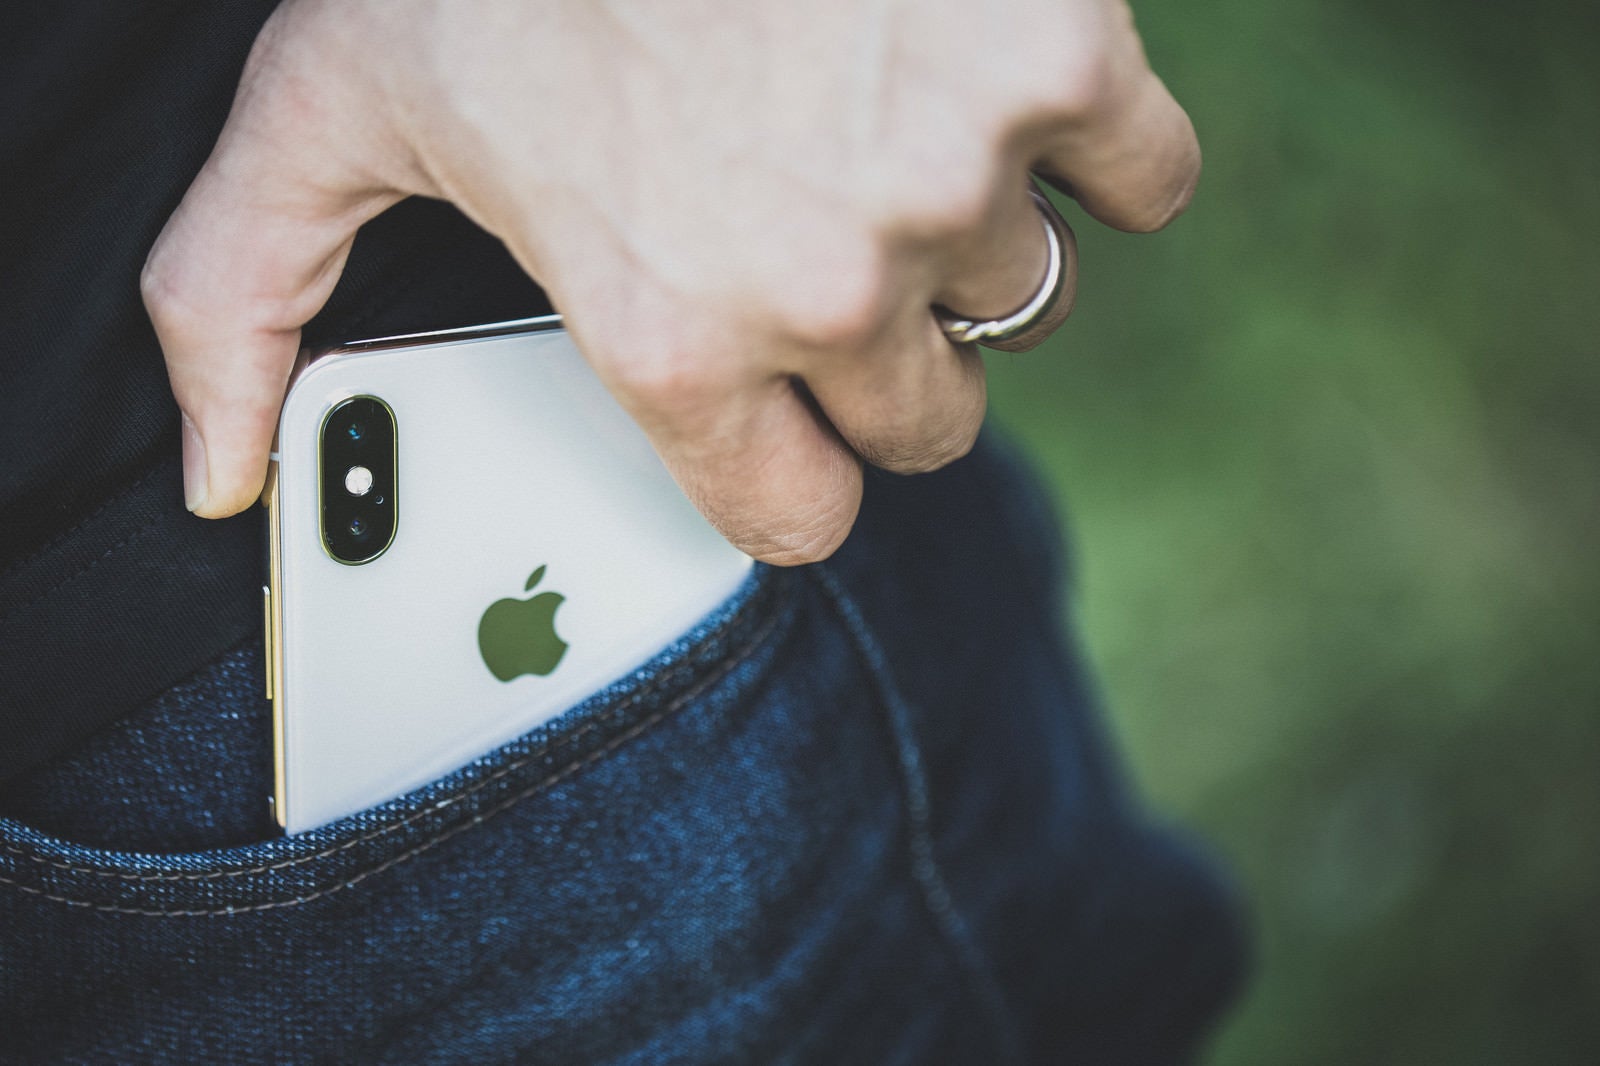 「ポケットから iPhone X を取り出す男性の手」の写真